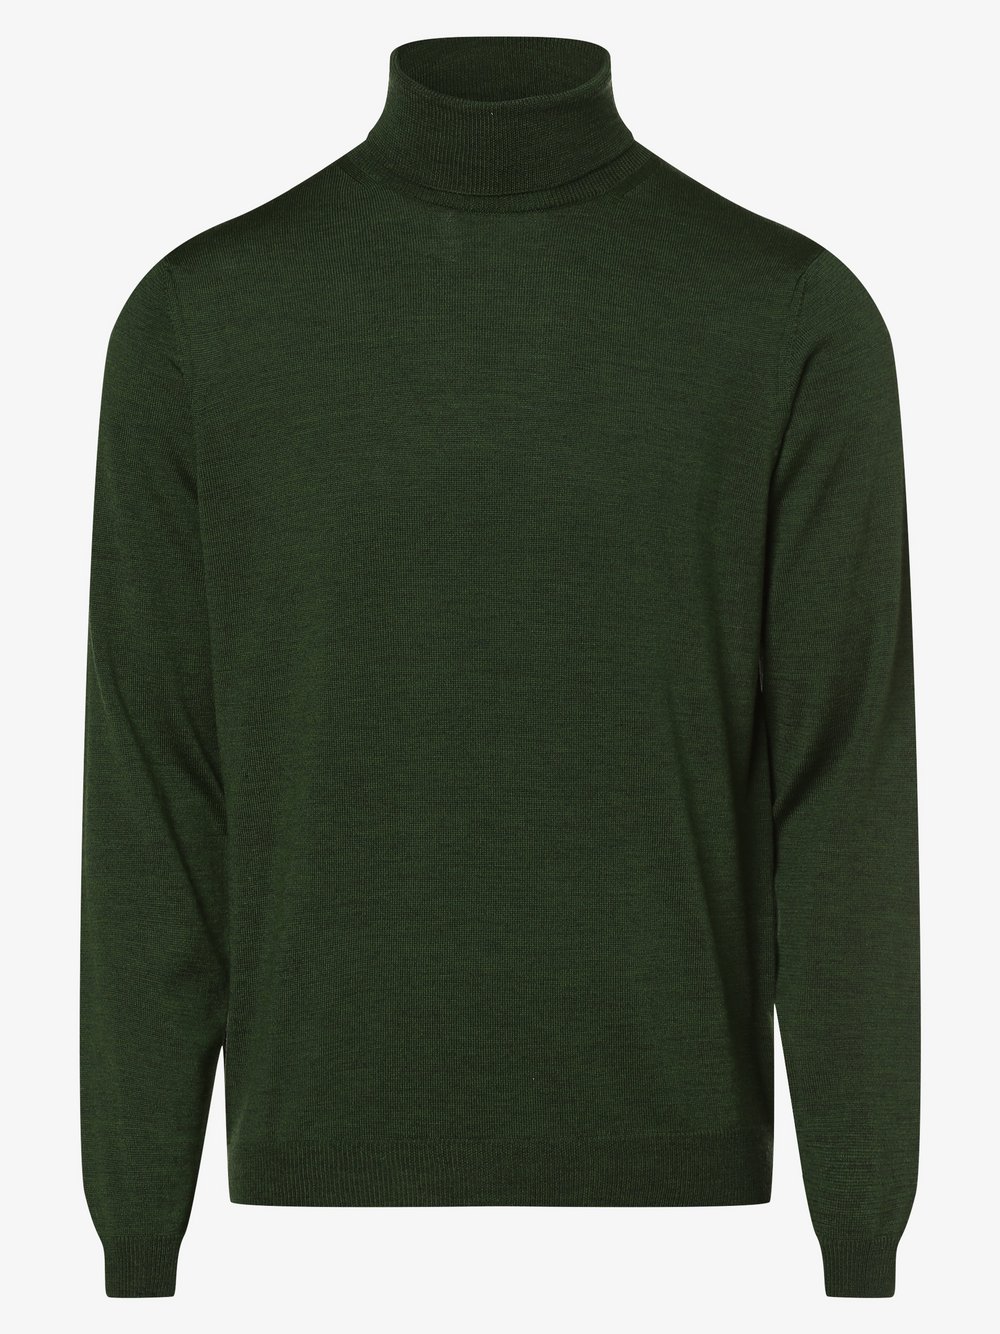 Finshley & Harding - Męski sweter z wełny merino, zielony